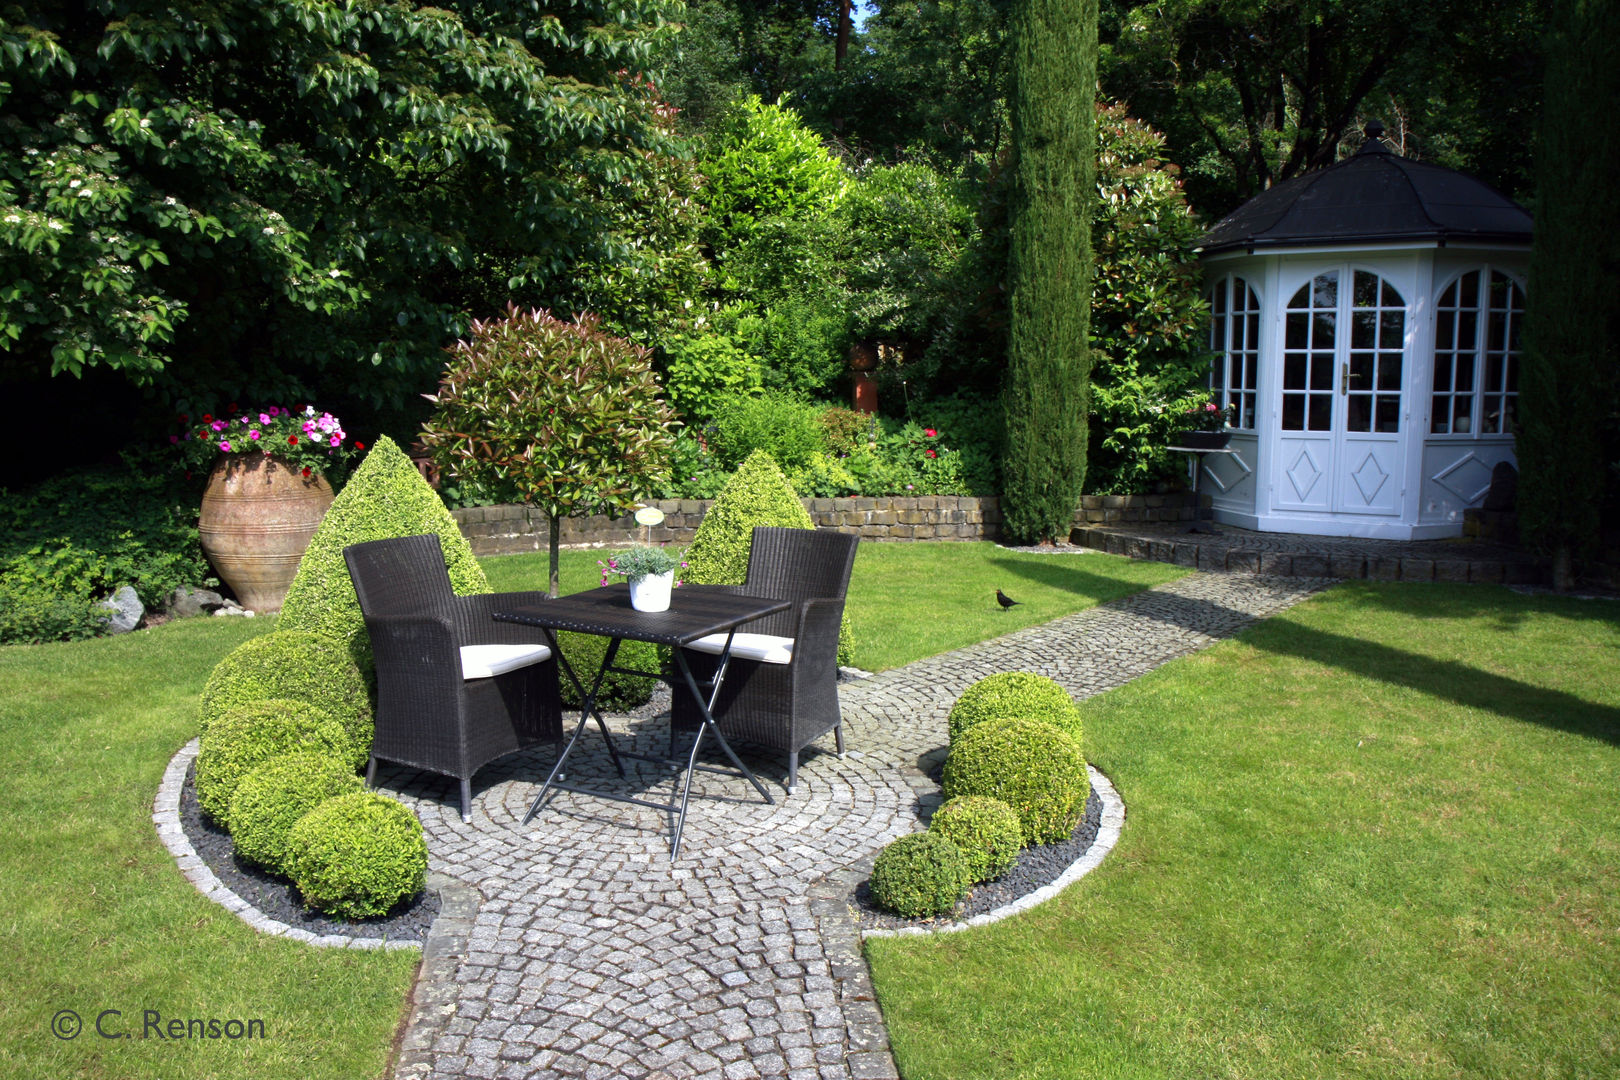 Garten mit Bachlauf, dirlenbach - garten mit stil dirlenbach - garten mit stil Country style garden